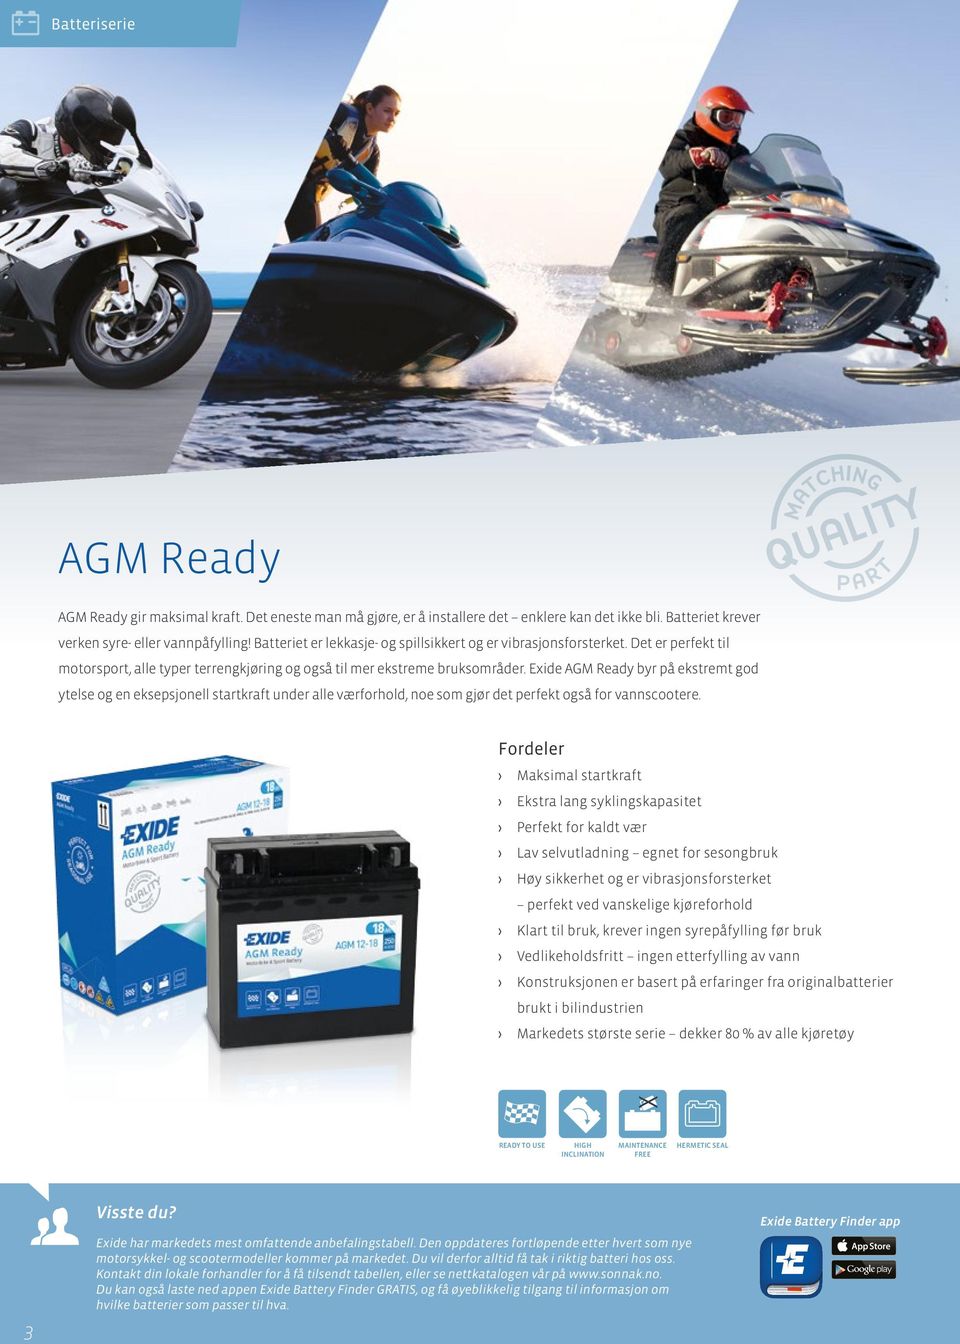 Exide AGM Ready byr på ekstremt god ytelse og en eksepsjonell startkraft under alle værforhold, noe som gjør det perfekt også for vannscootere.